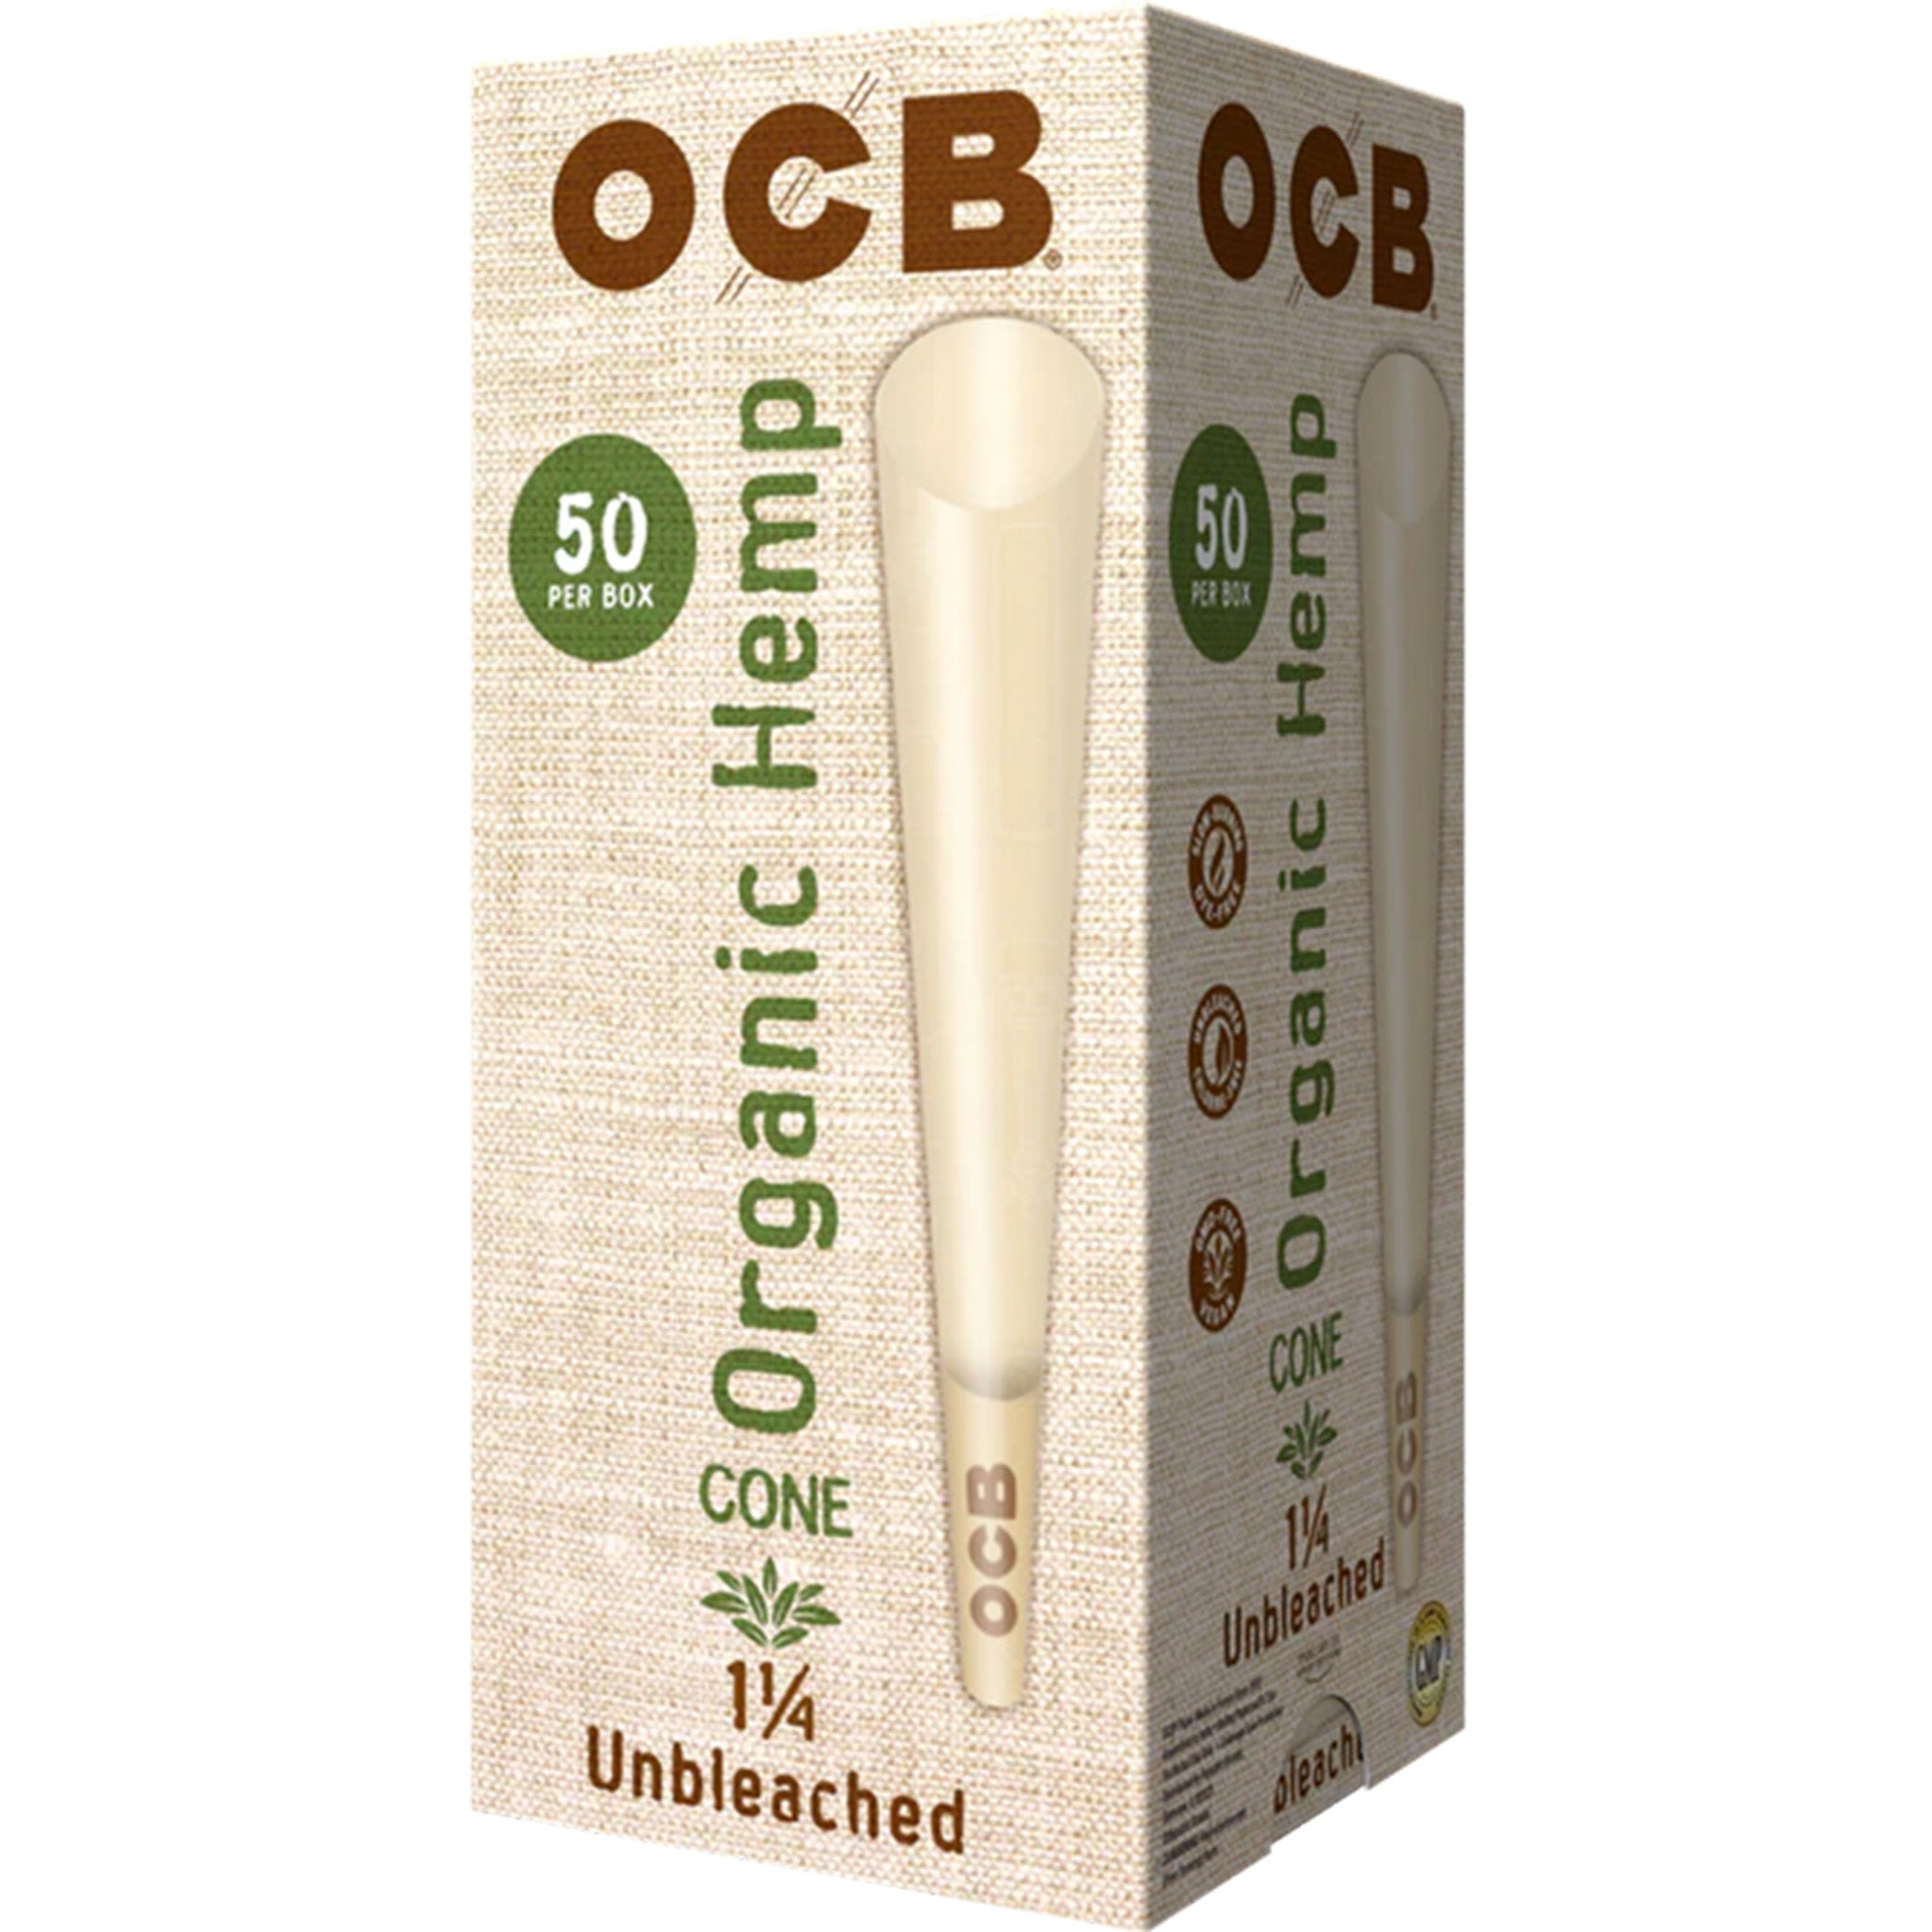 OCB Organic Hemp 1 1/4 Cones Large Box Cone OCB 50 